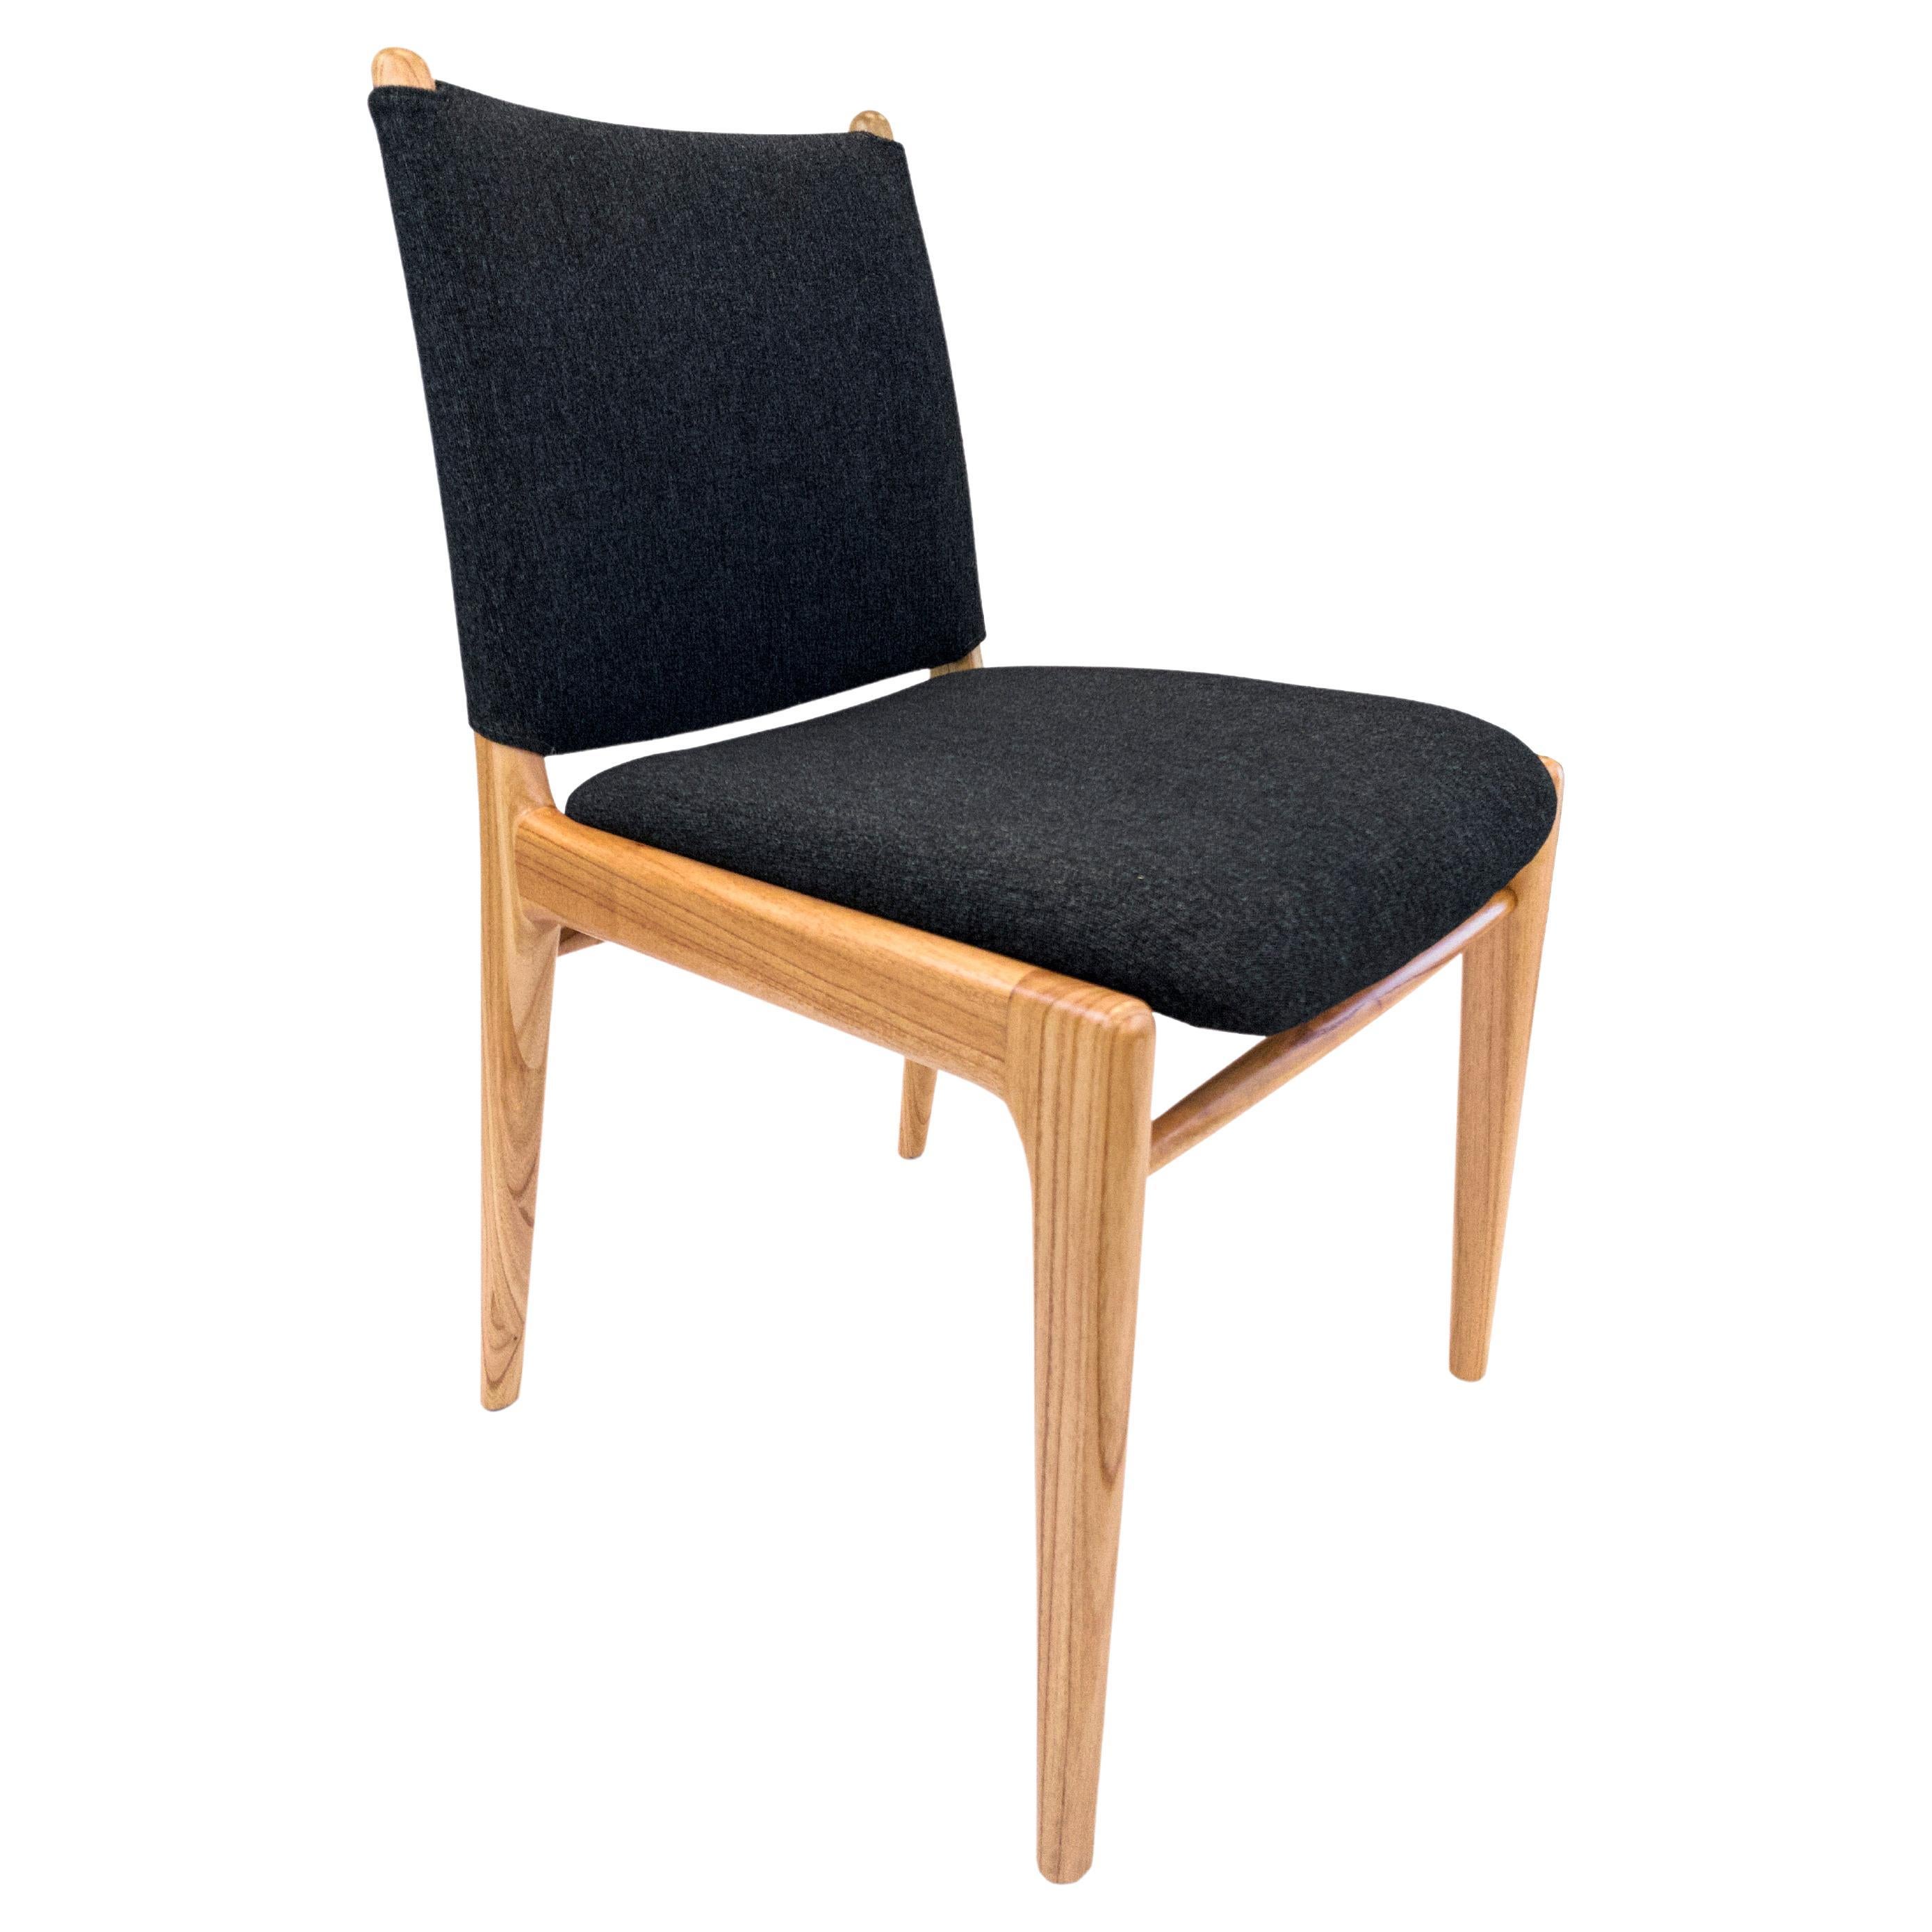 Der Cappio-Stuhl hebt unser wunderschönes Porzellanholz-Finish in Kombination mit einem atemberaubenden schwarzen Stoff hervor. Dieser Stuhl zeichnet sich durch ein einzigartiges Schnallendesign auf der Rückseite der Sitzfläche aus. Unser Team bei